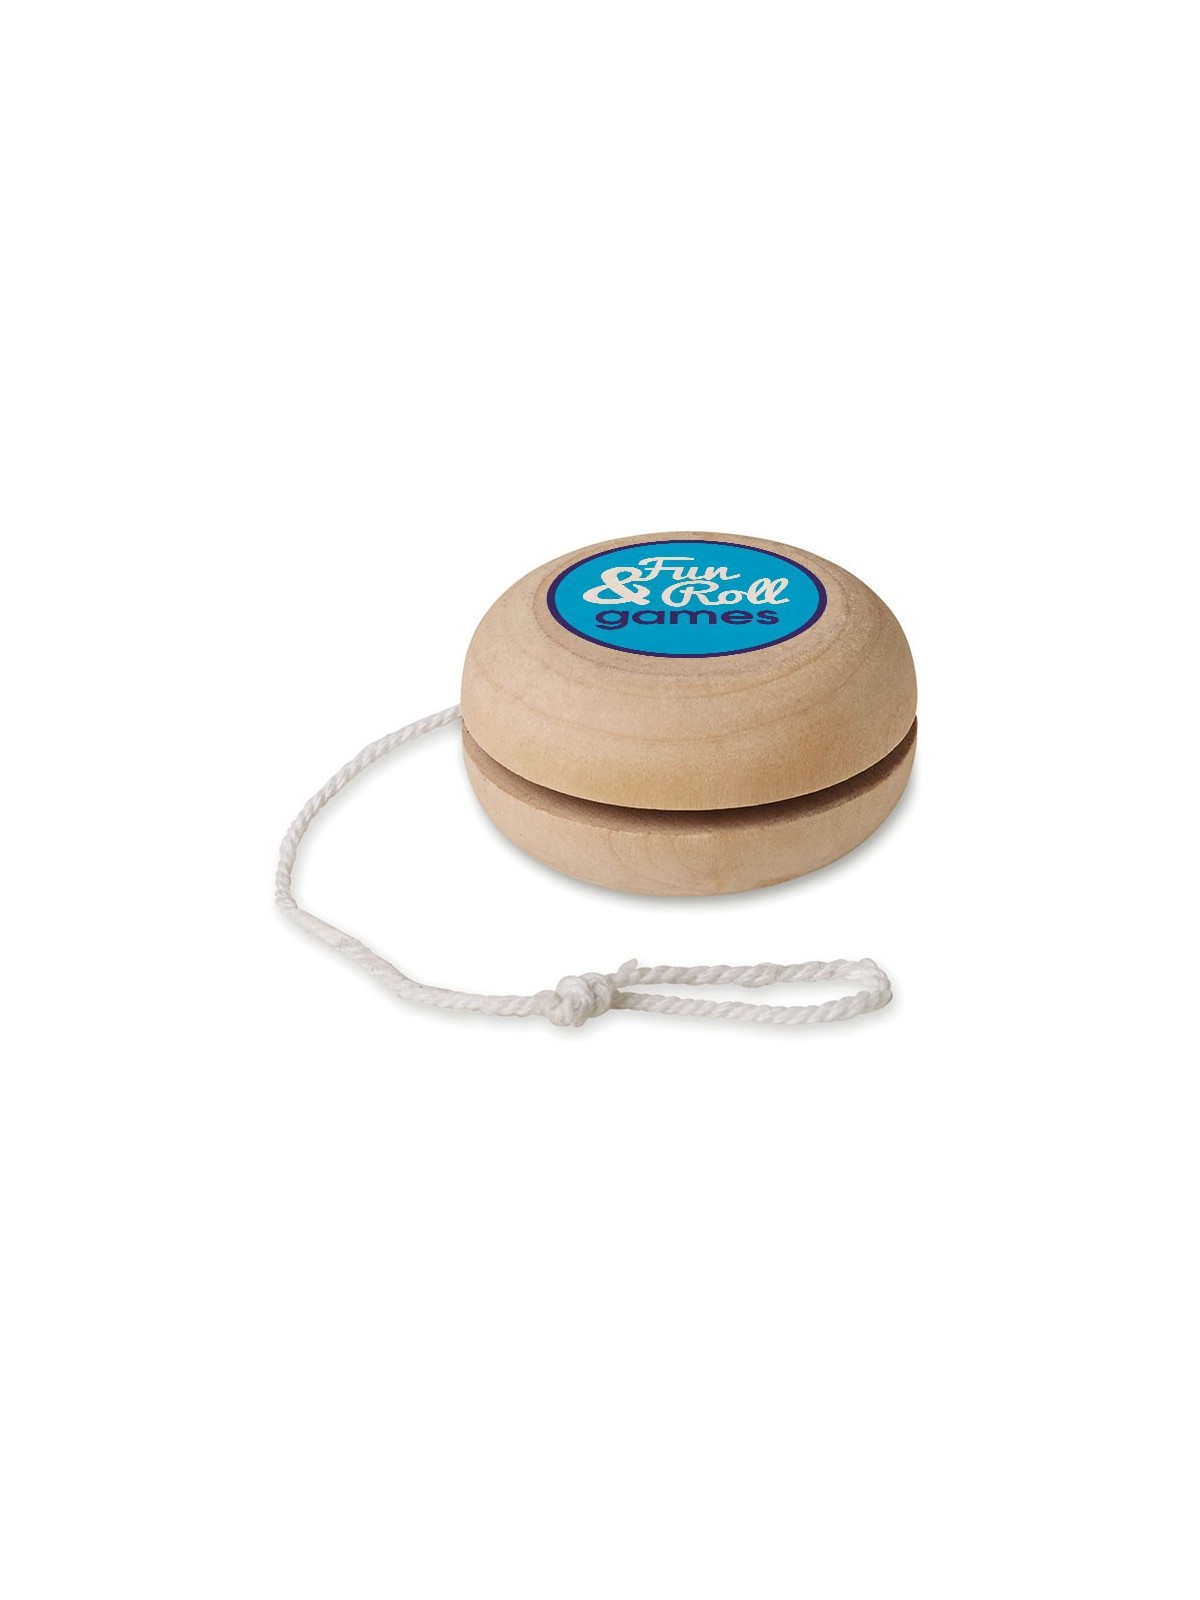 41-255 Yo-yo en bois personnalisé